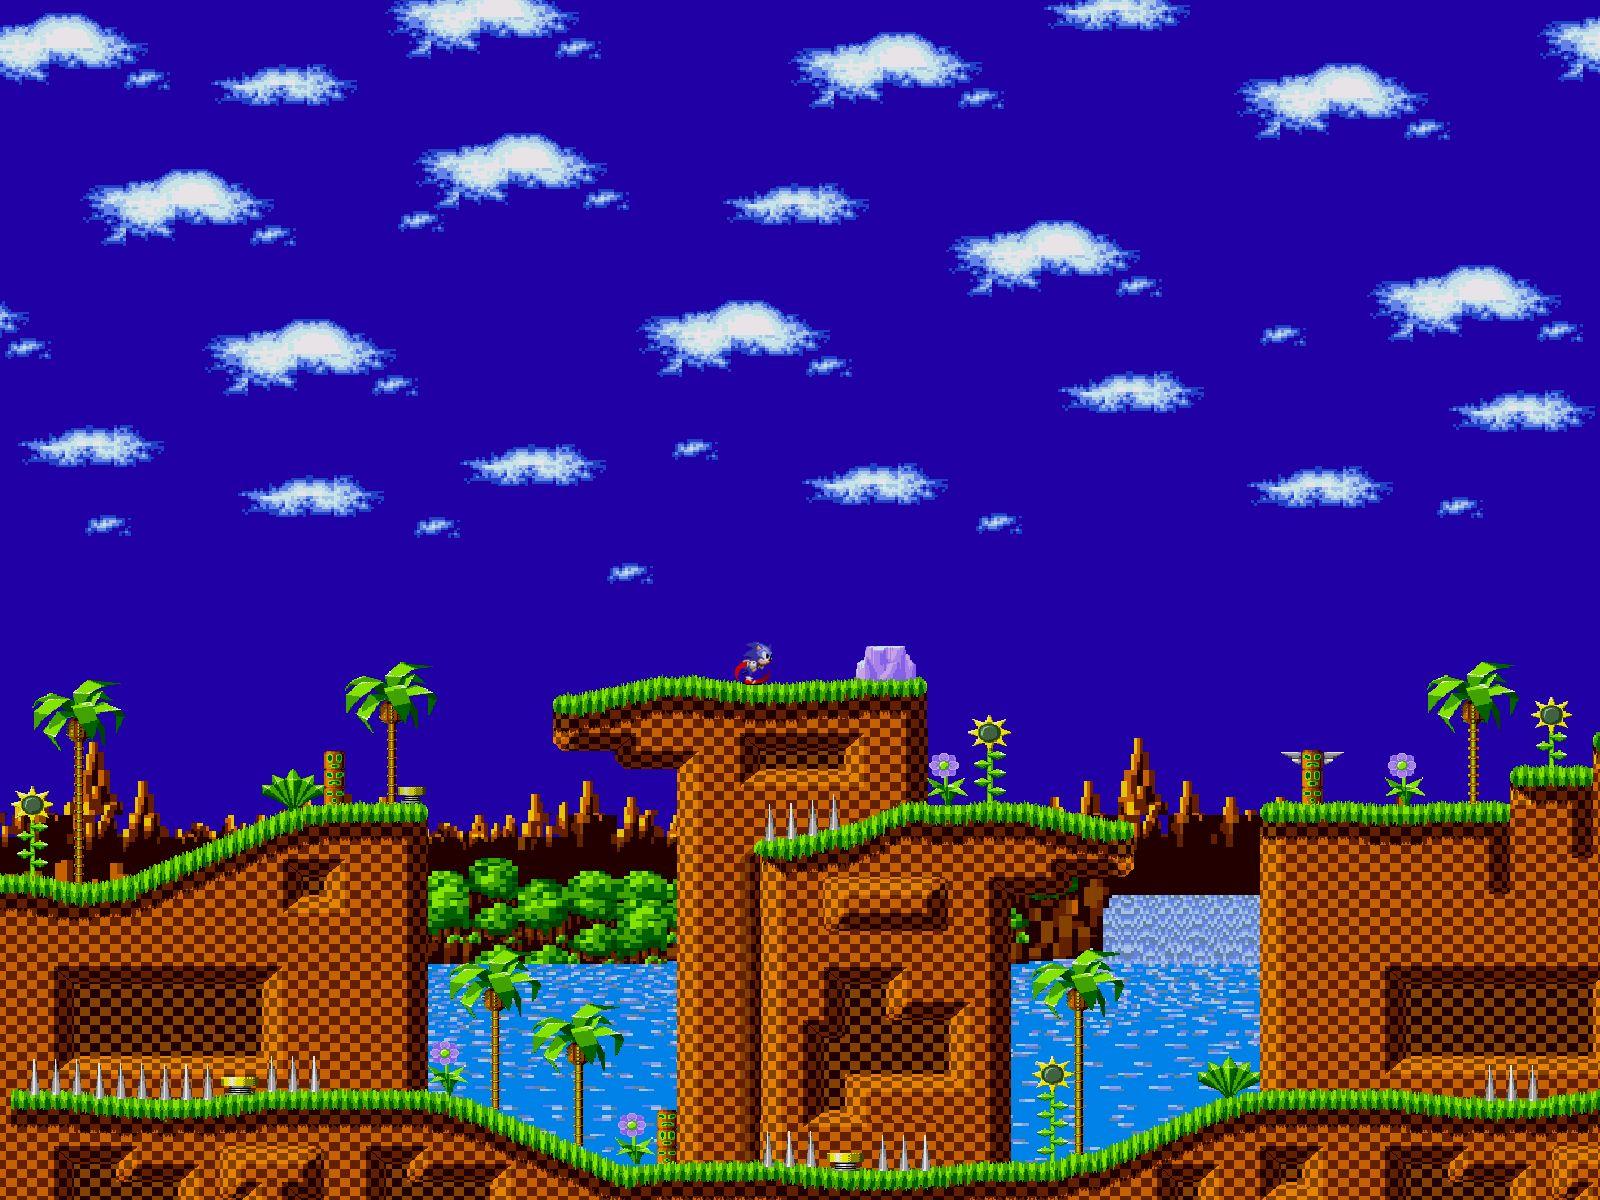 Nếu bạn là fan của Sonic, bạn sẽ không muốn bỏ lỡ bộ sưu tập hình nền 2D tuyệt đẹp về Sonic The Hedgehog. Hãy xem hình ảnh để tìm ngay cho mình bức hình nền yêu thích nhé!